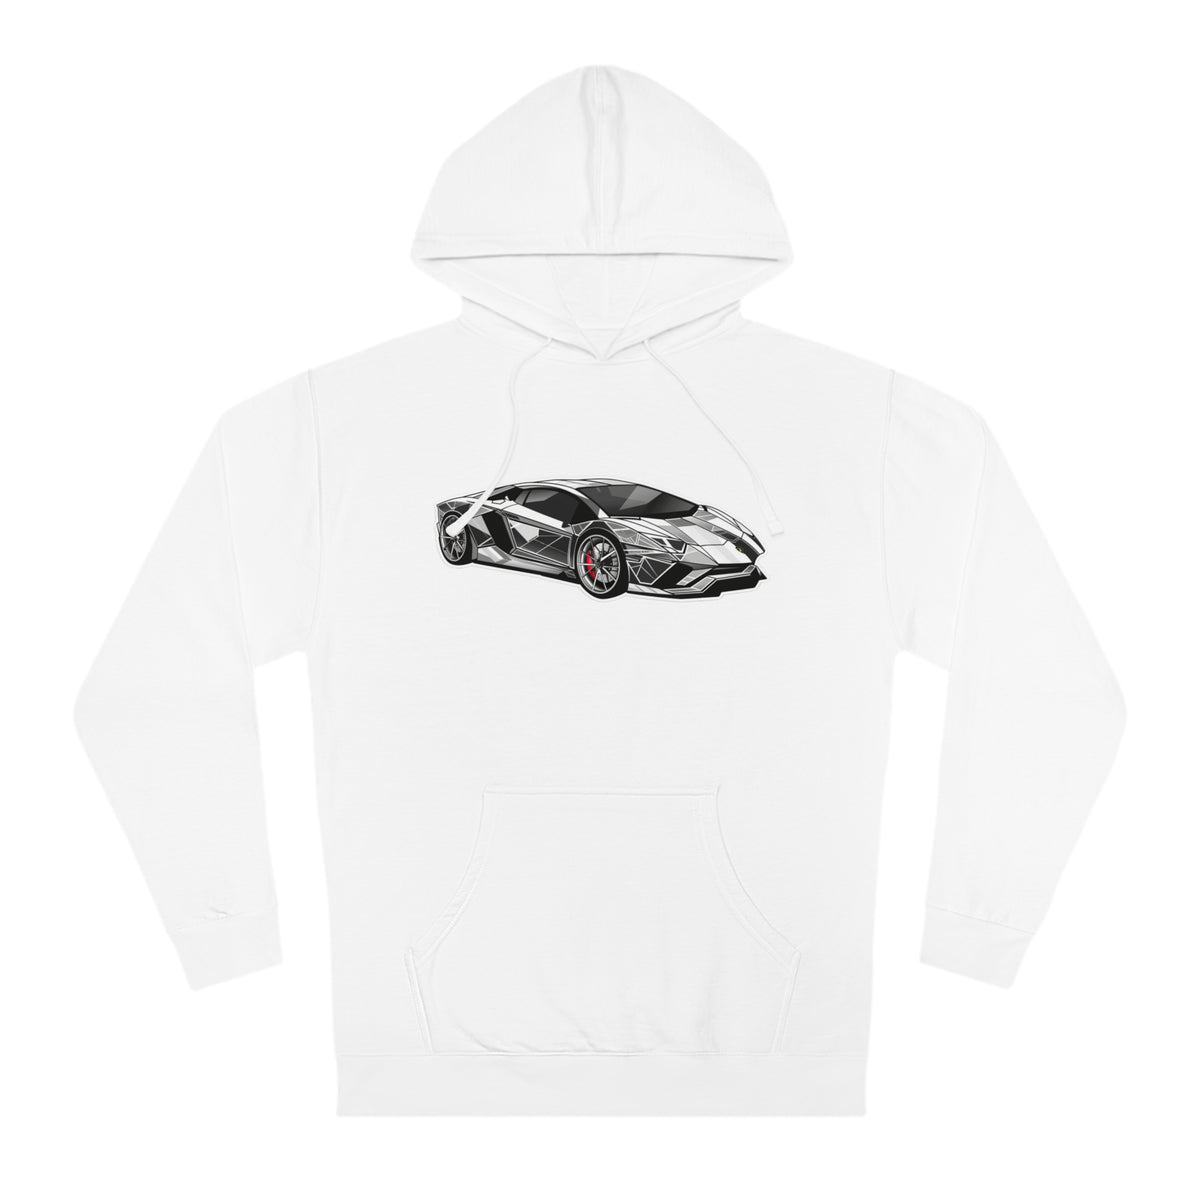 Futurist Fast Car Enthusiast Hoodie/Hooded Sweatshirt